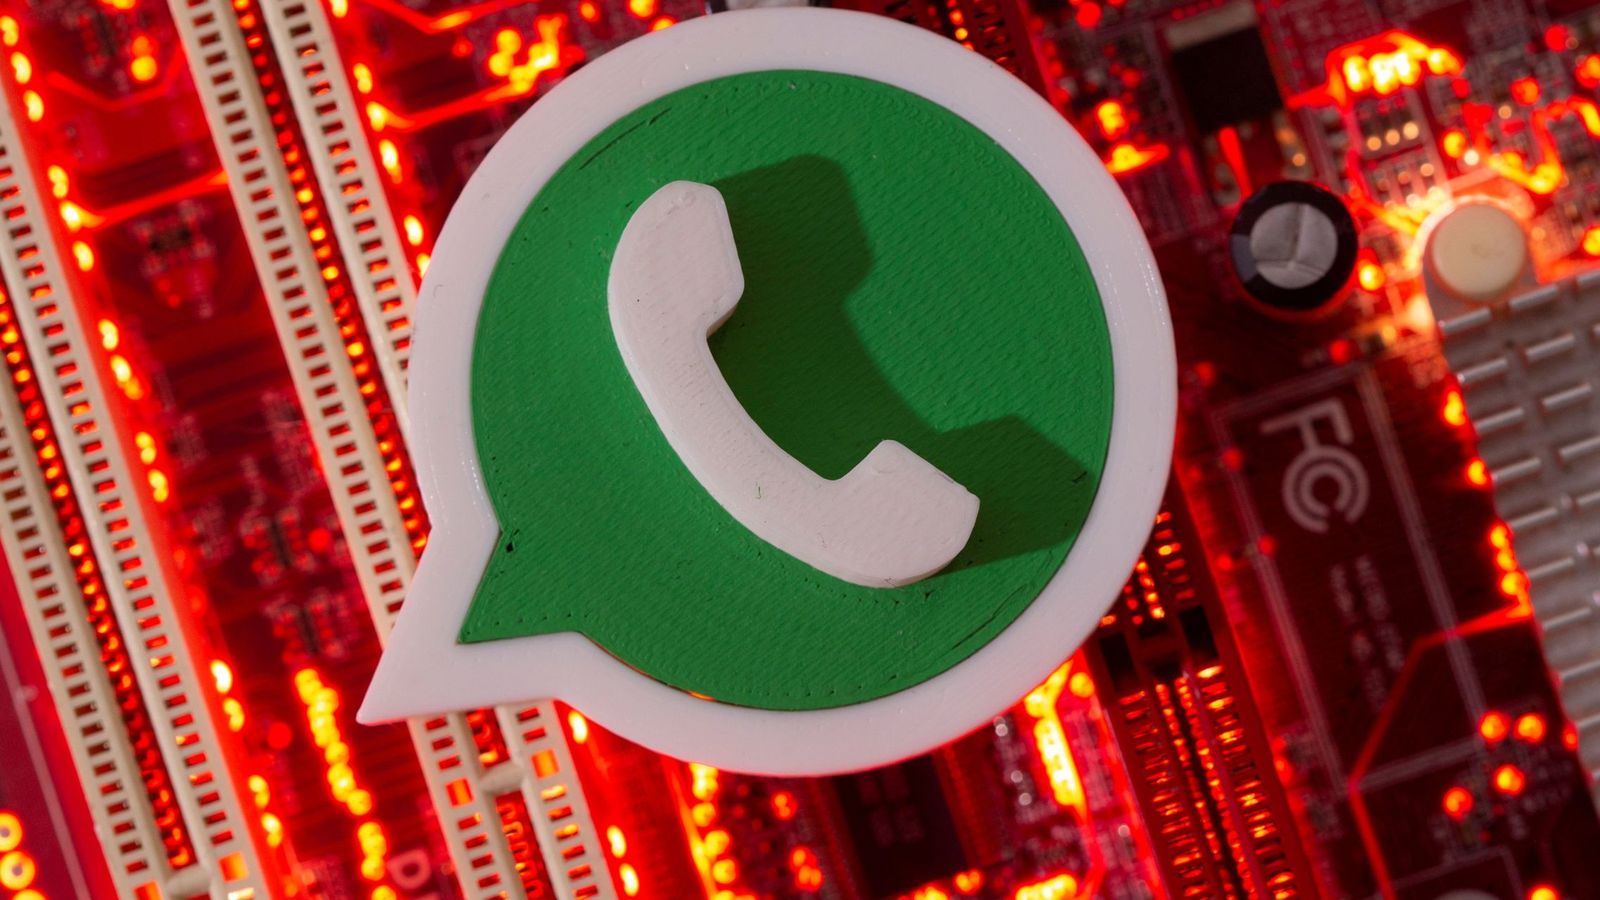 WhatsApp: ¿Qué pasa si no aceptas las condiciones de uso de WhatsApp? Este  sábado termina el plazo